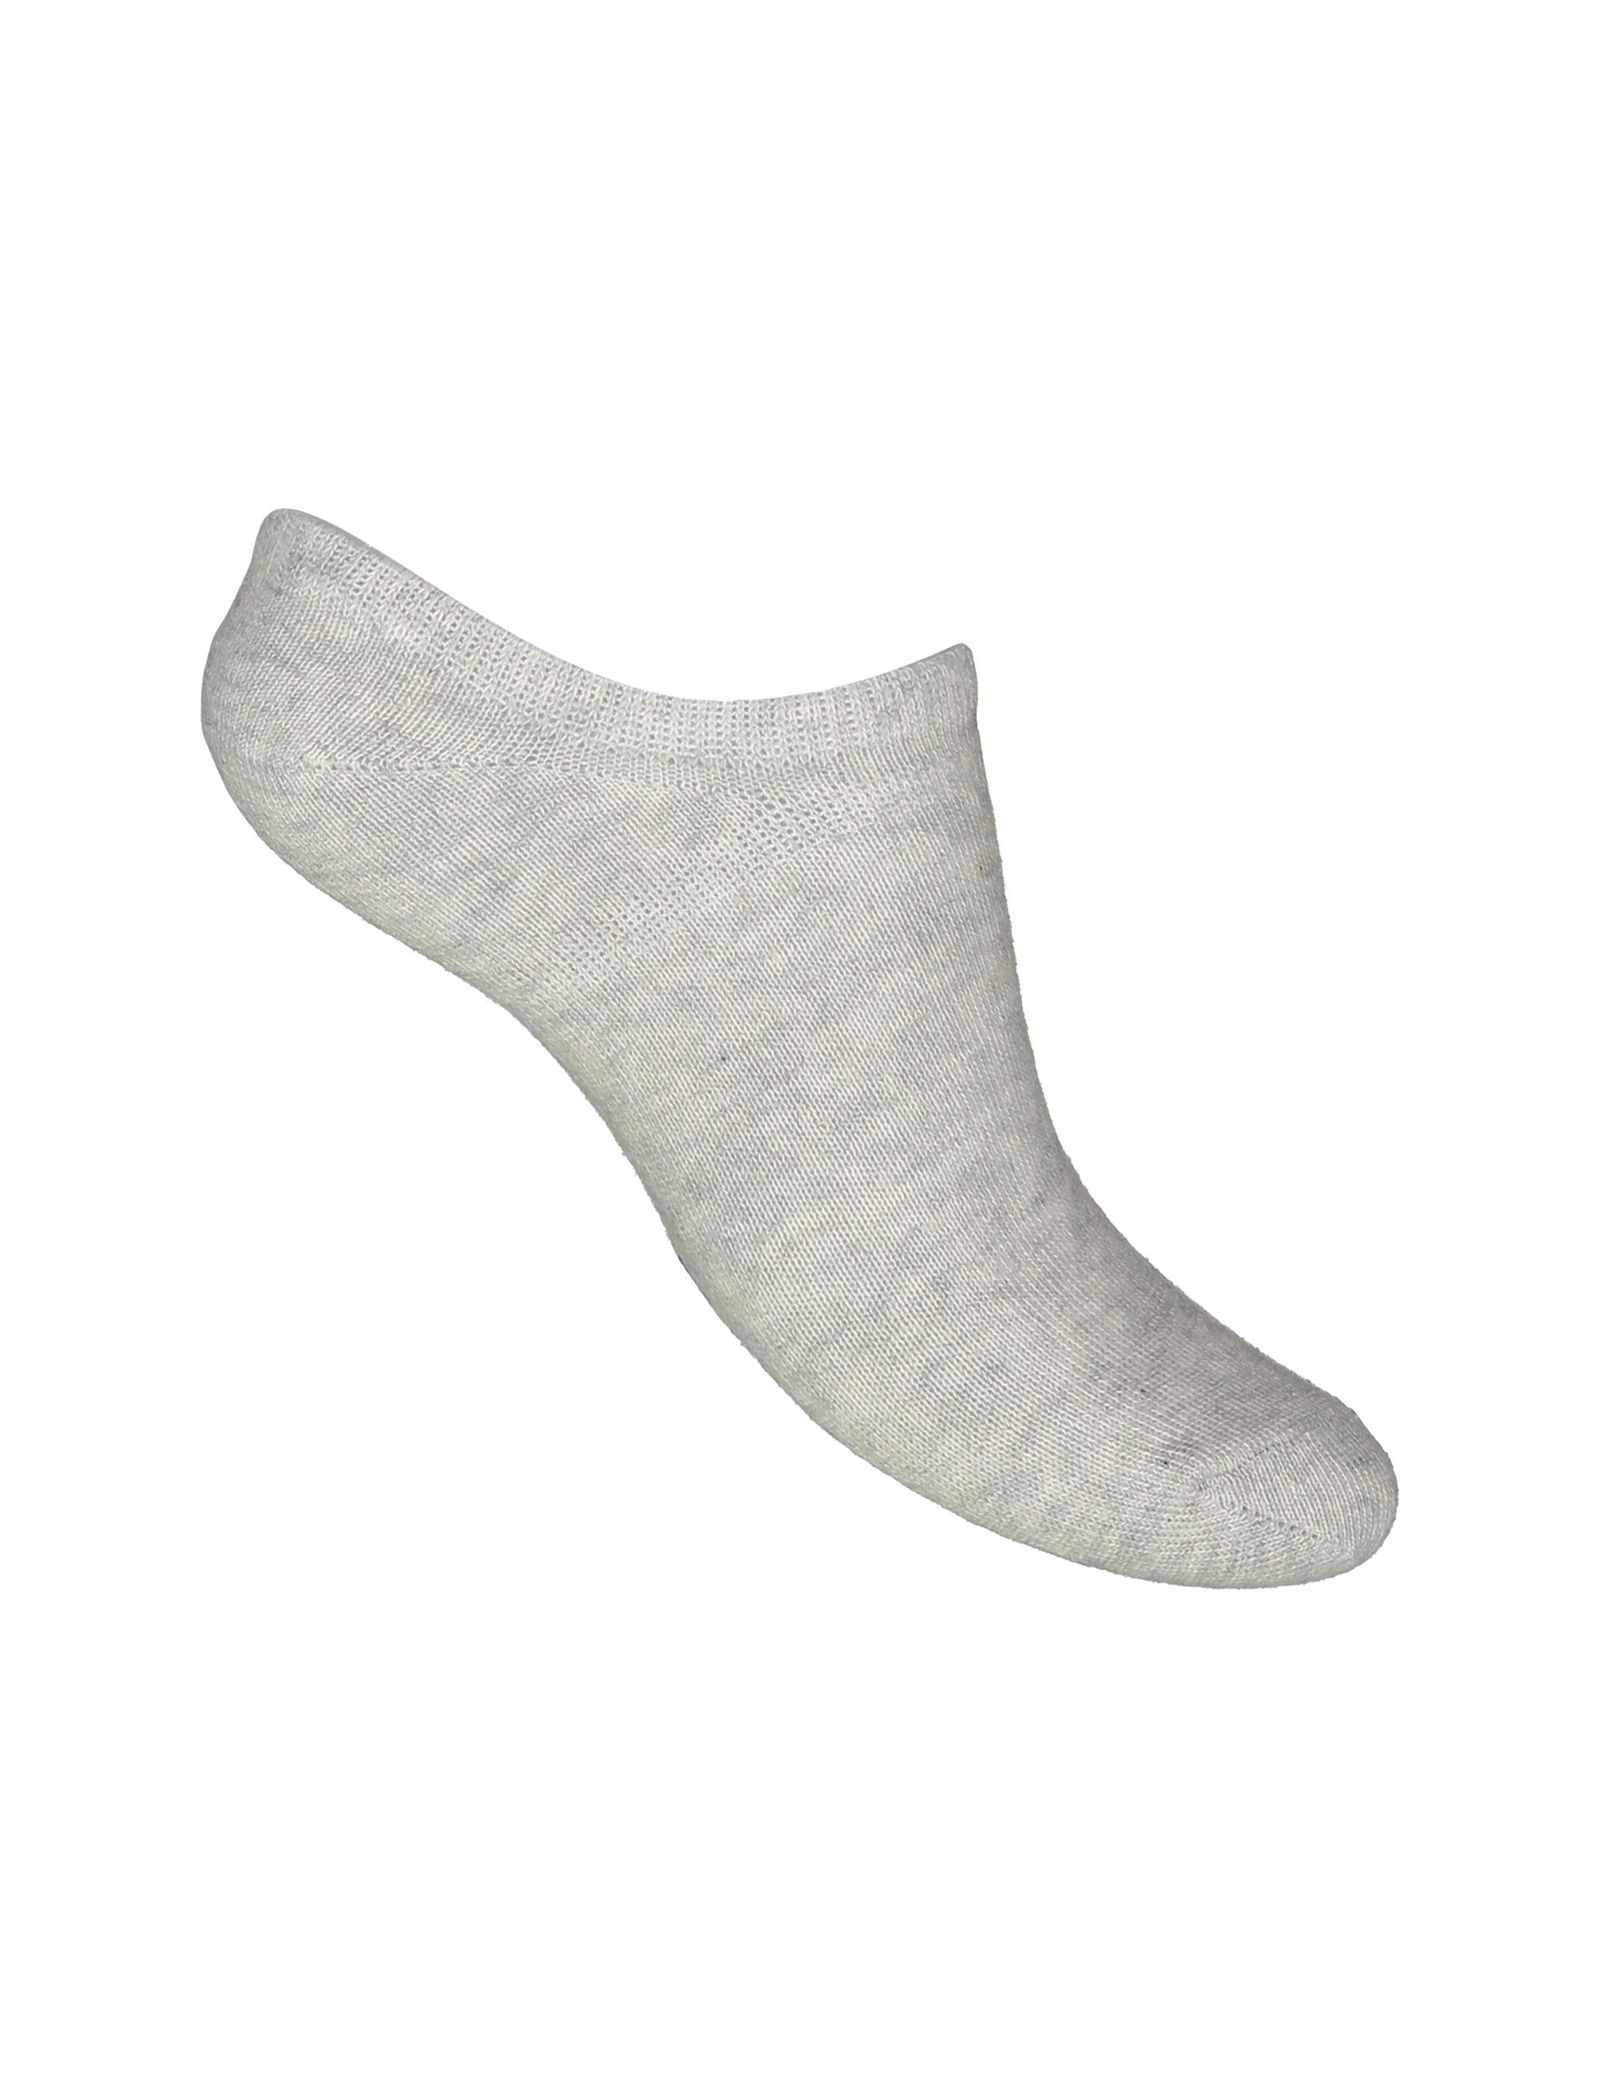 جوراب نخی بدون ساق بچگانه بسته 3 عددی - بلوکیدز - سفيد/طوسي/سرمه اي - 5